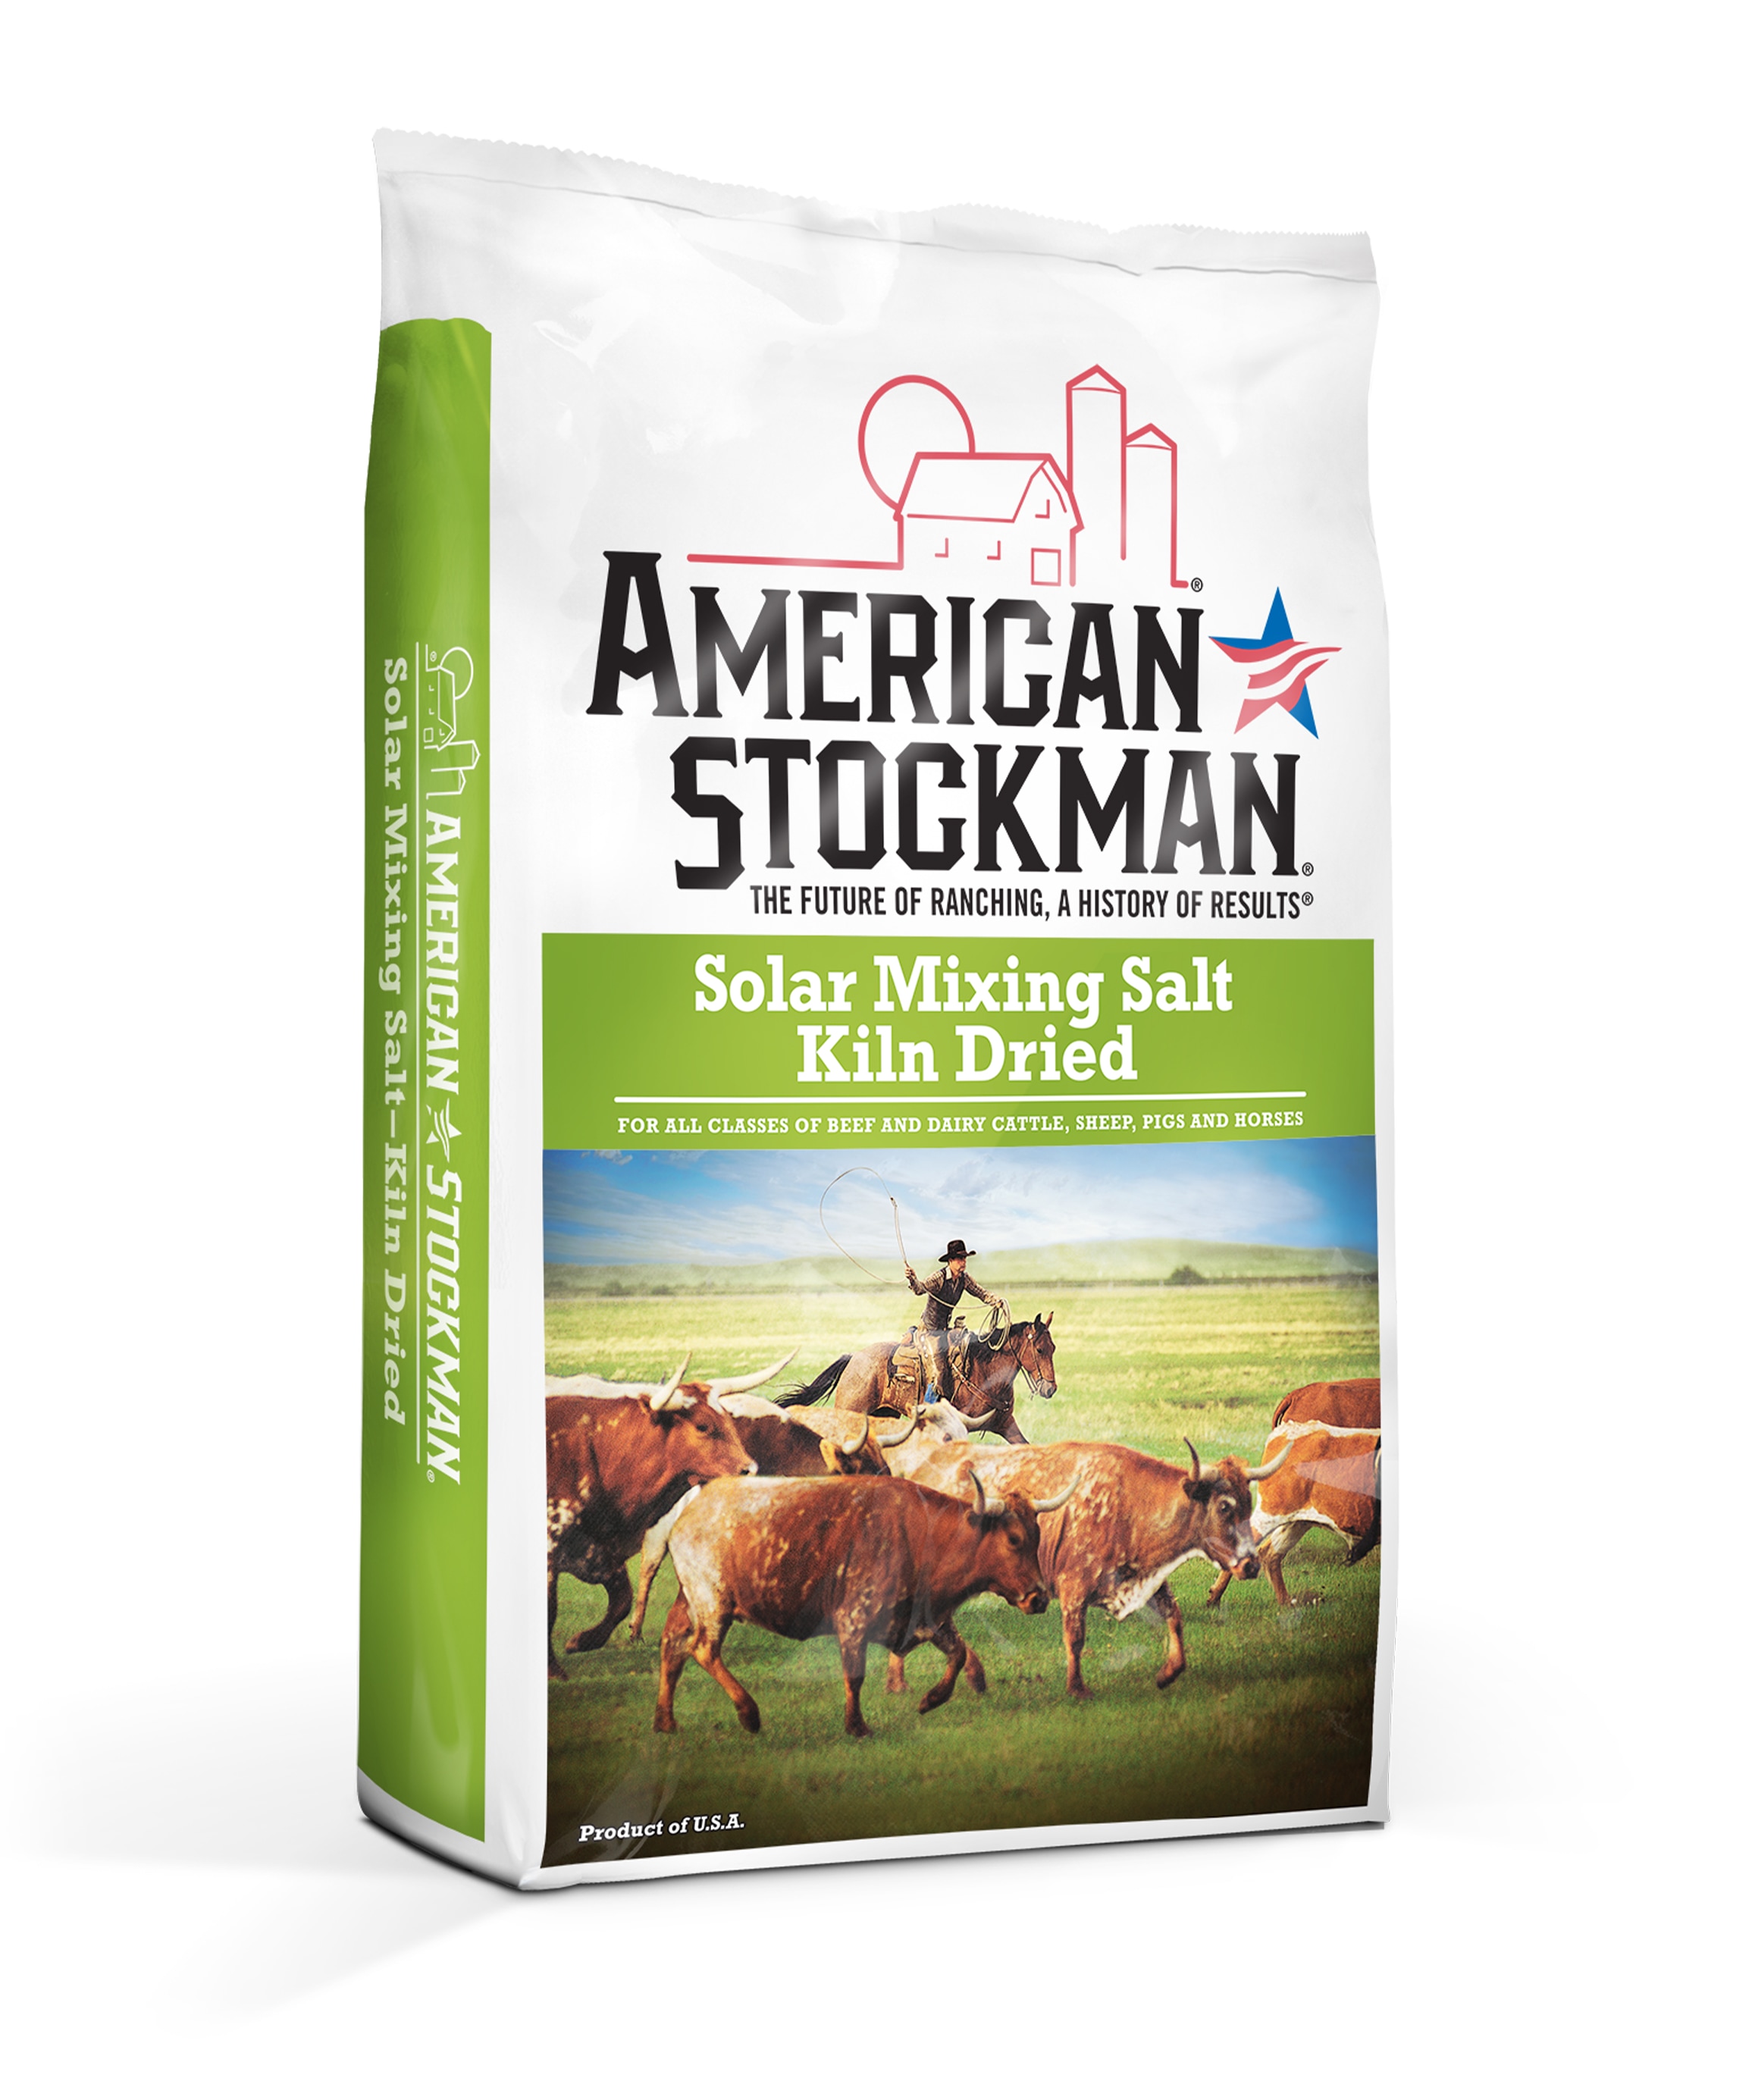 American Stockman® Solar Mixing Salt, Kiln Dried Bag